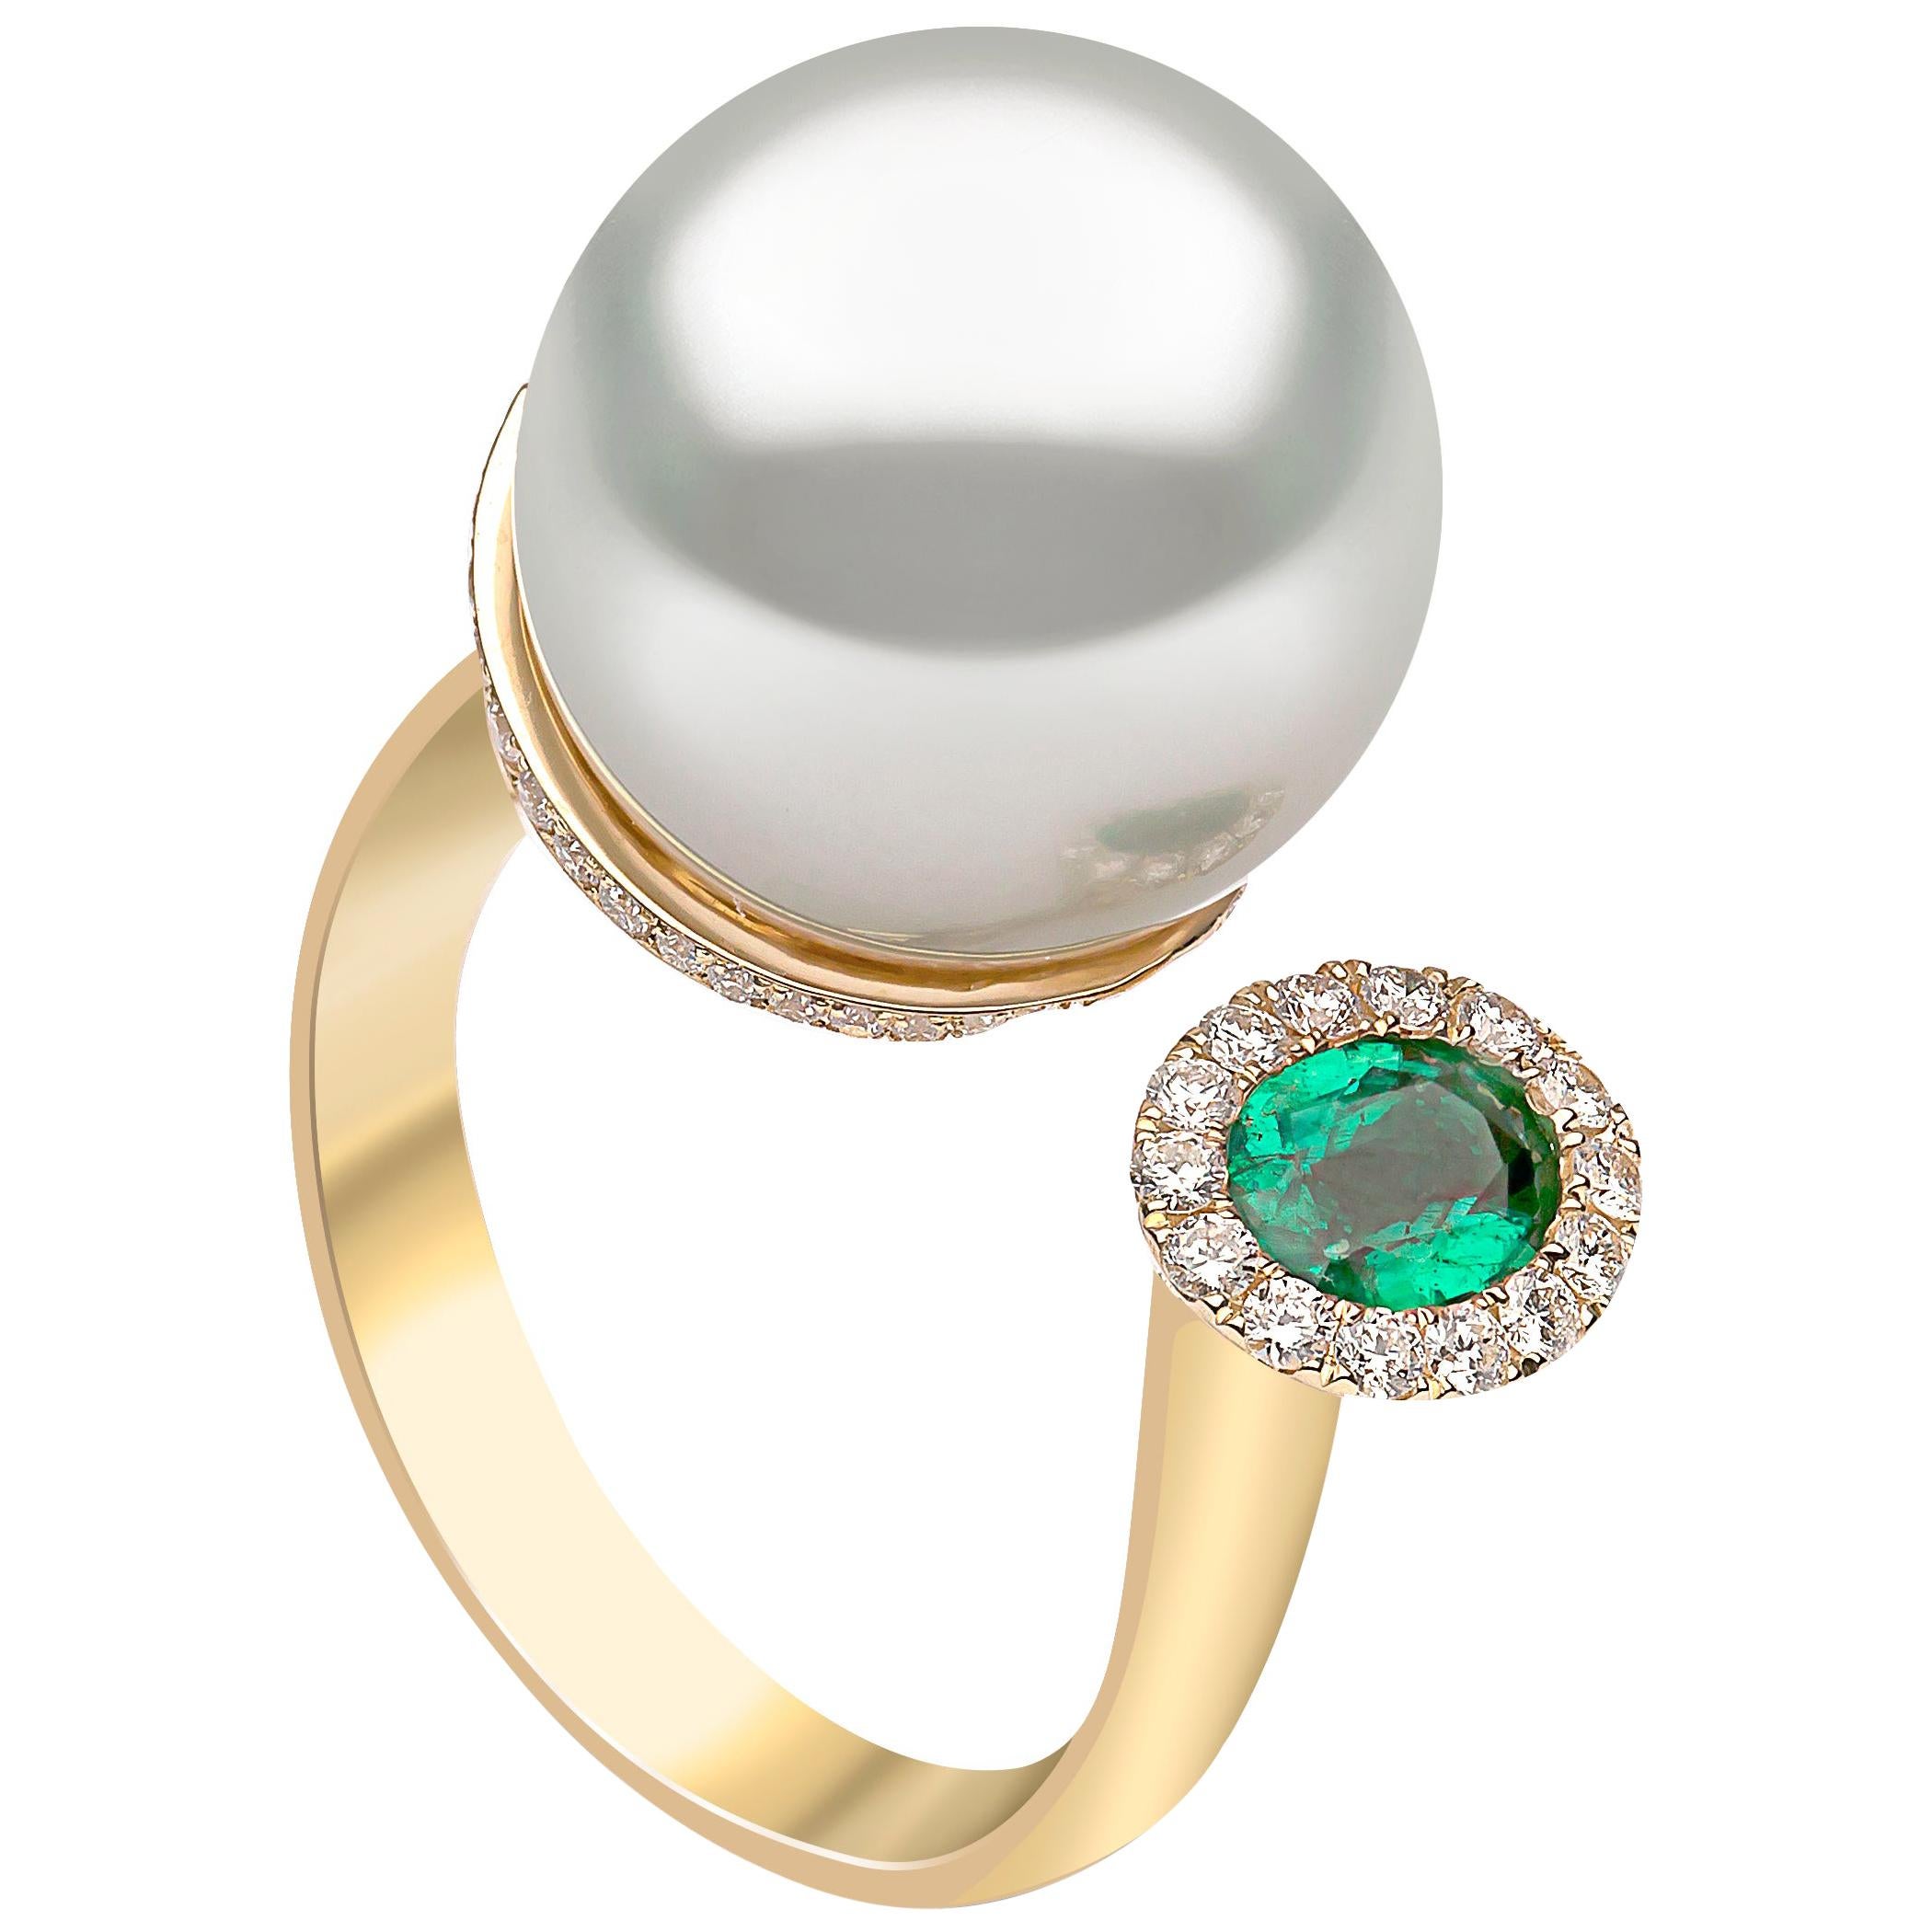 Yoko London South Sea Pearl, Emerald and Diamond Ring in 18 Karat Yellow Gold